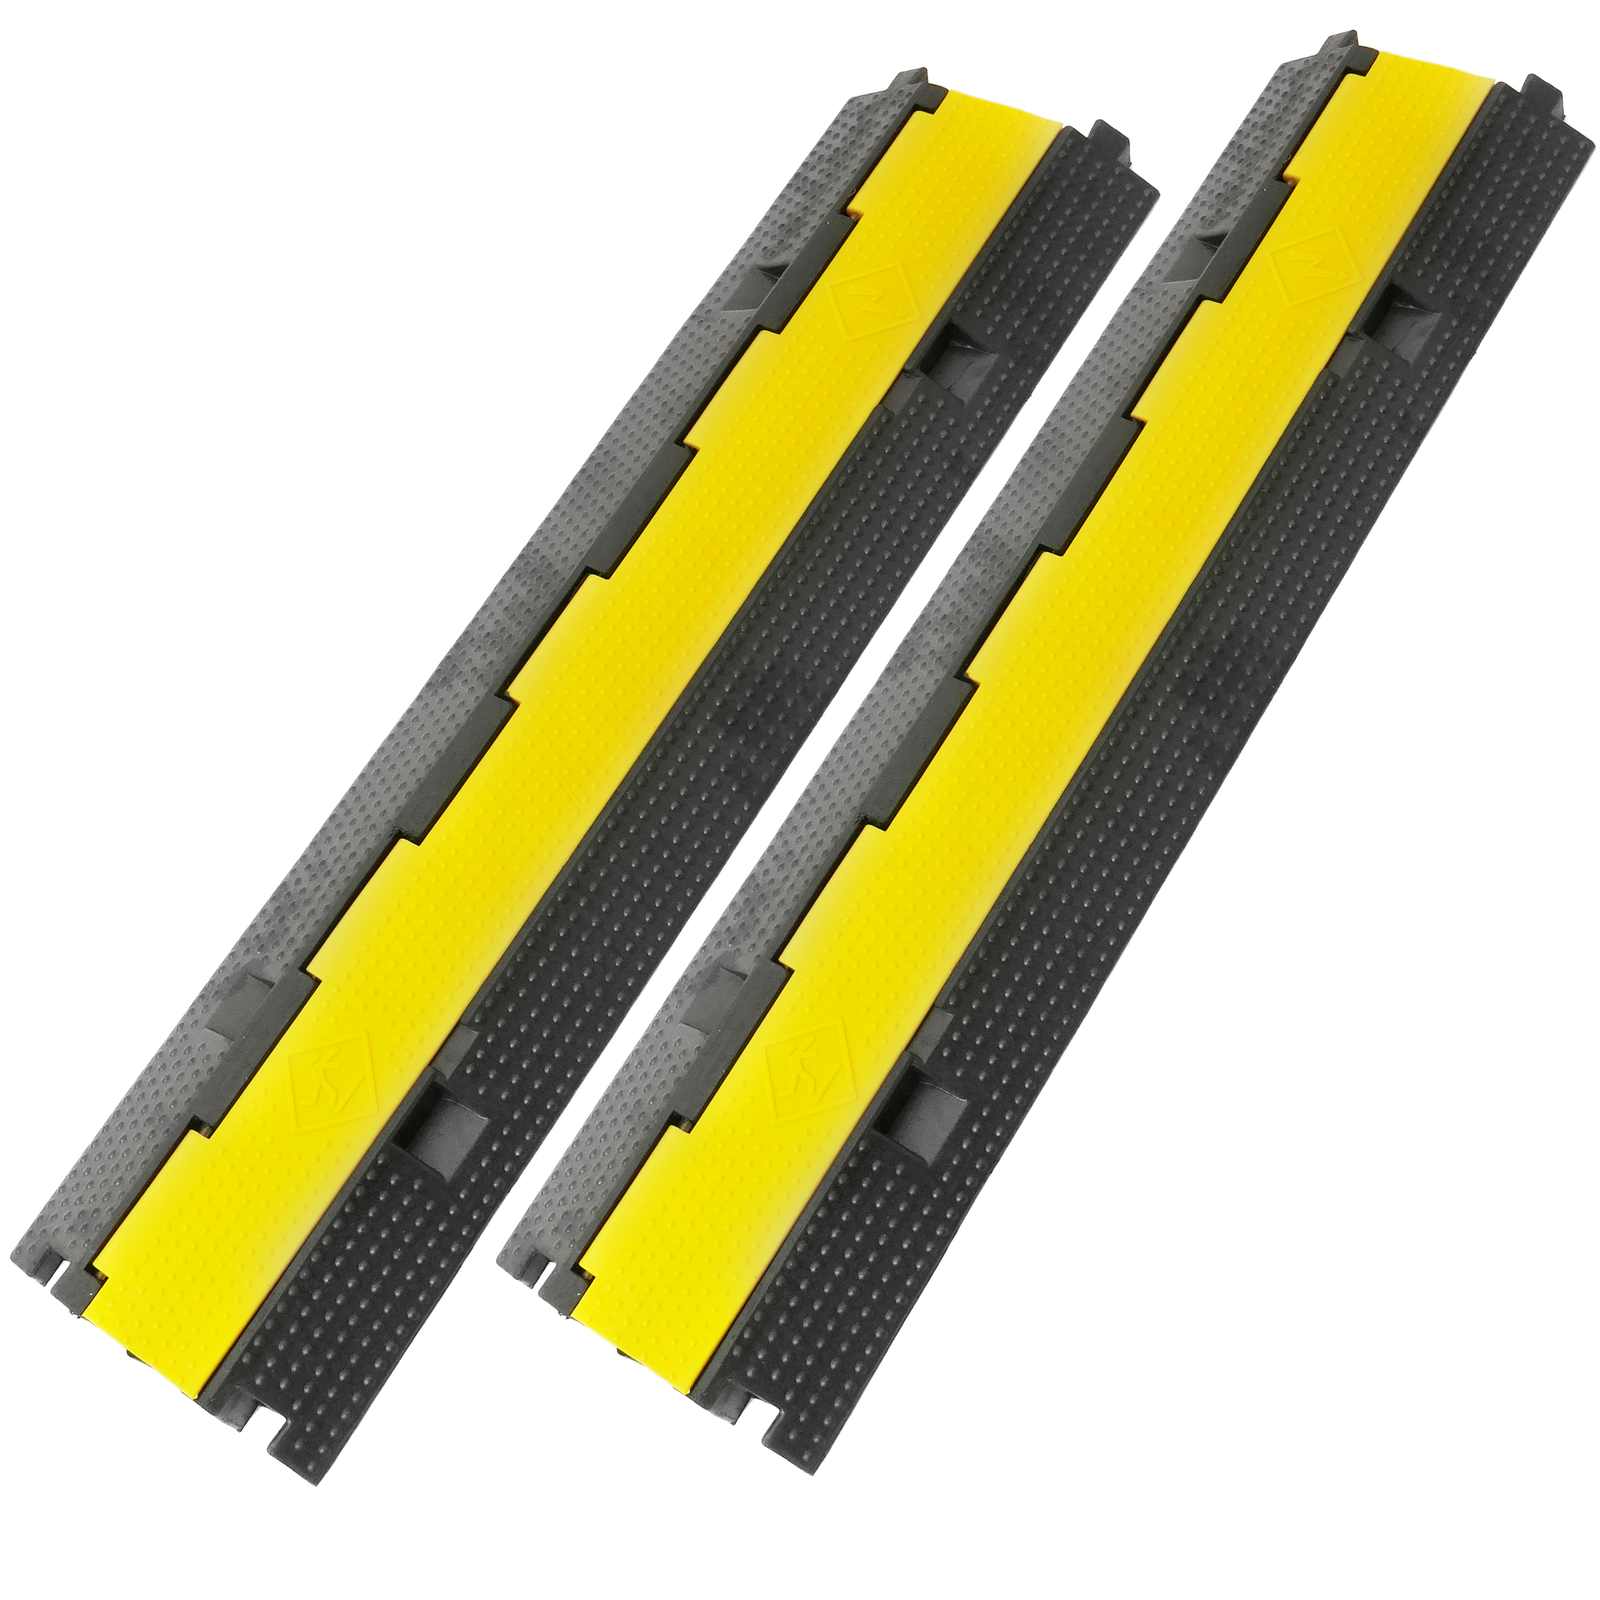 Pasacables de suelo para protección de cables eléctricos de 1 vía 100x13 cm  amarillo rígido - Hiper Herramientas